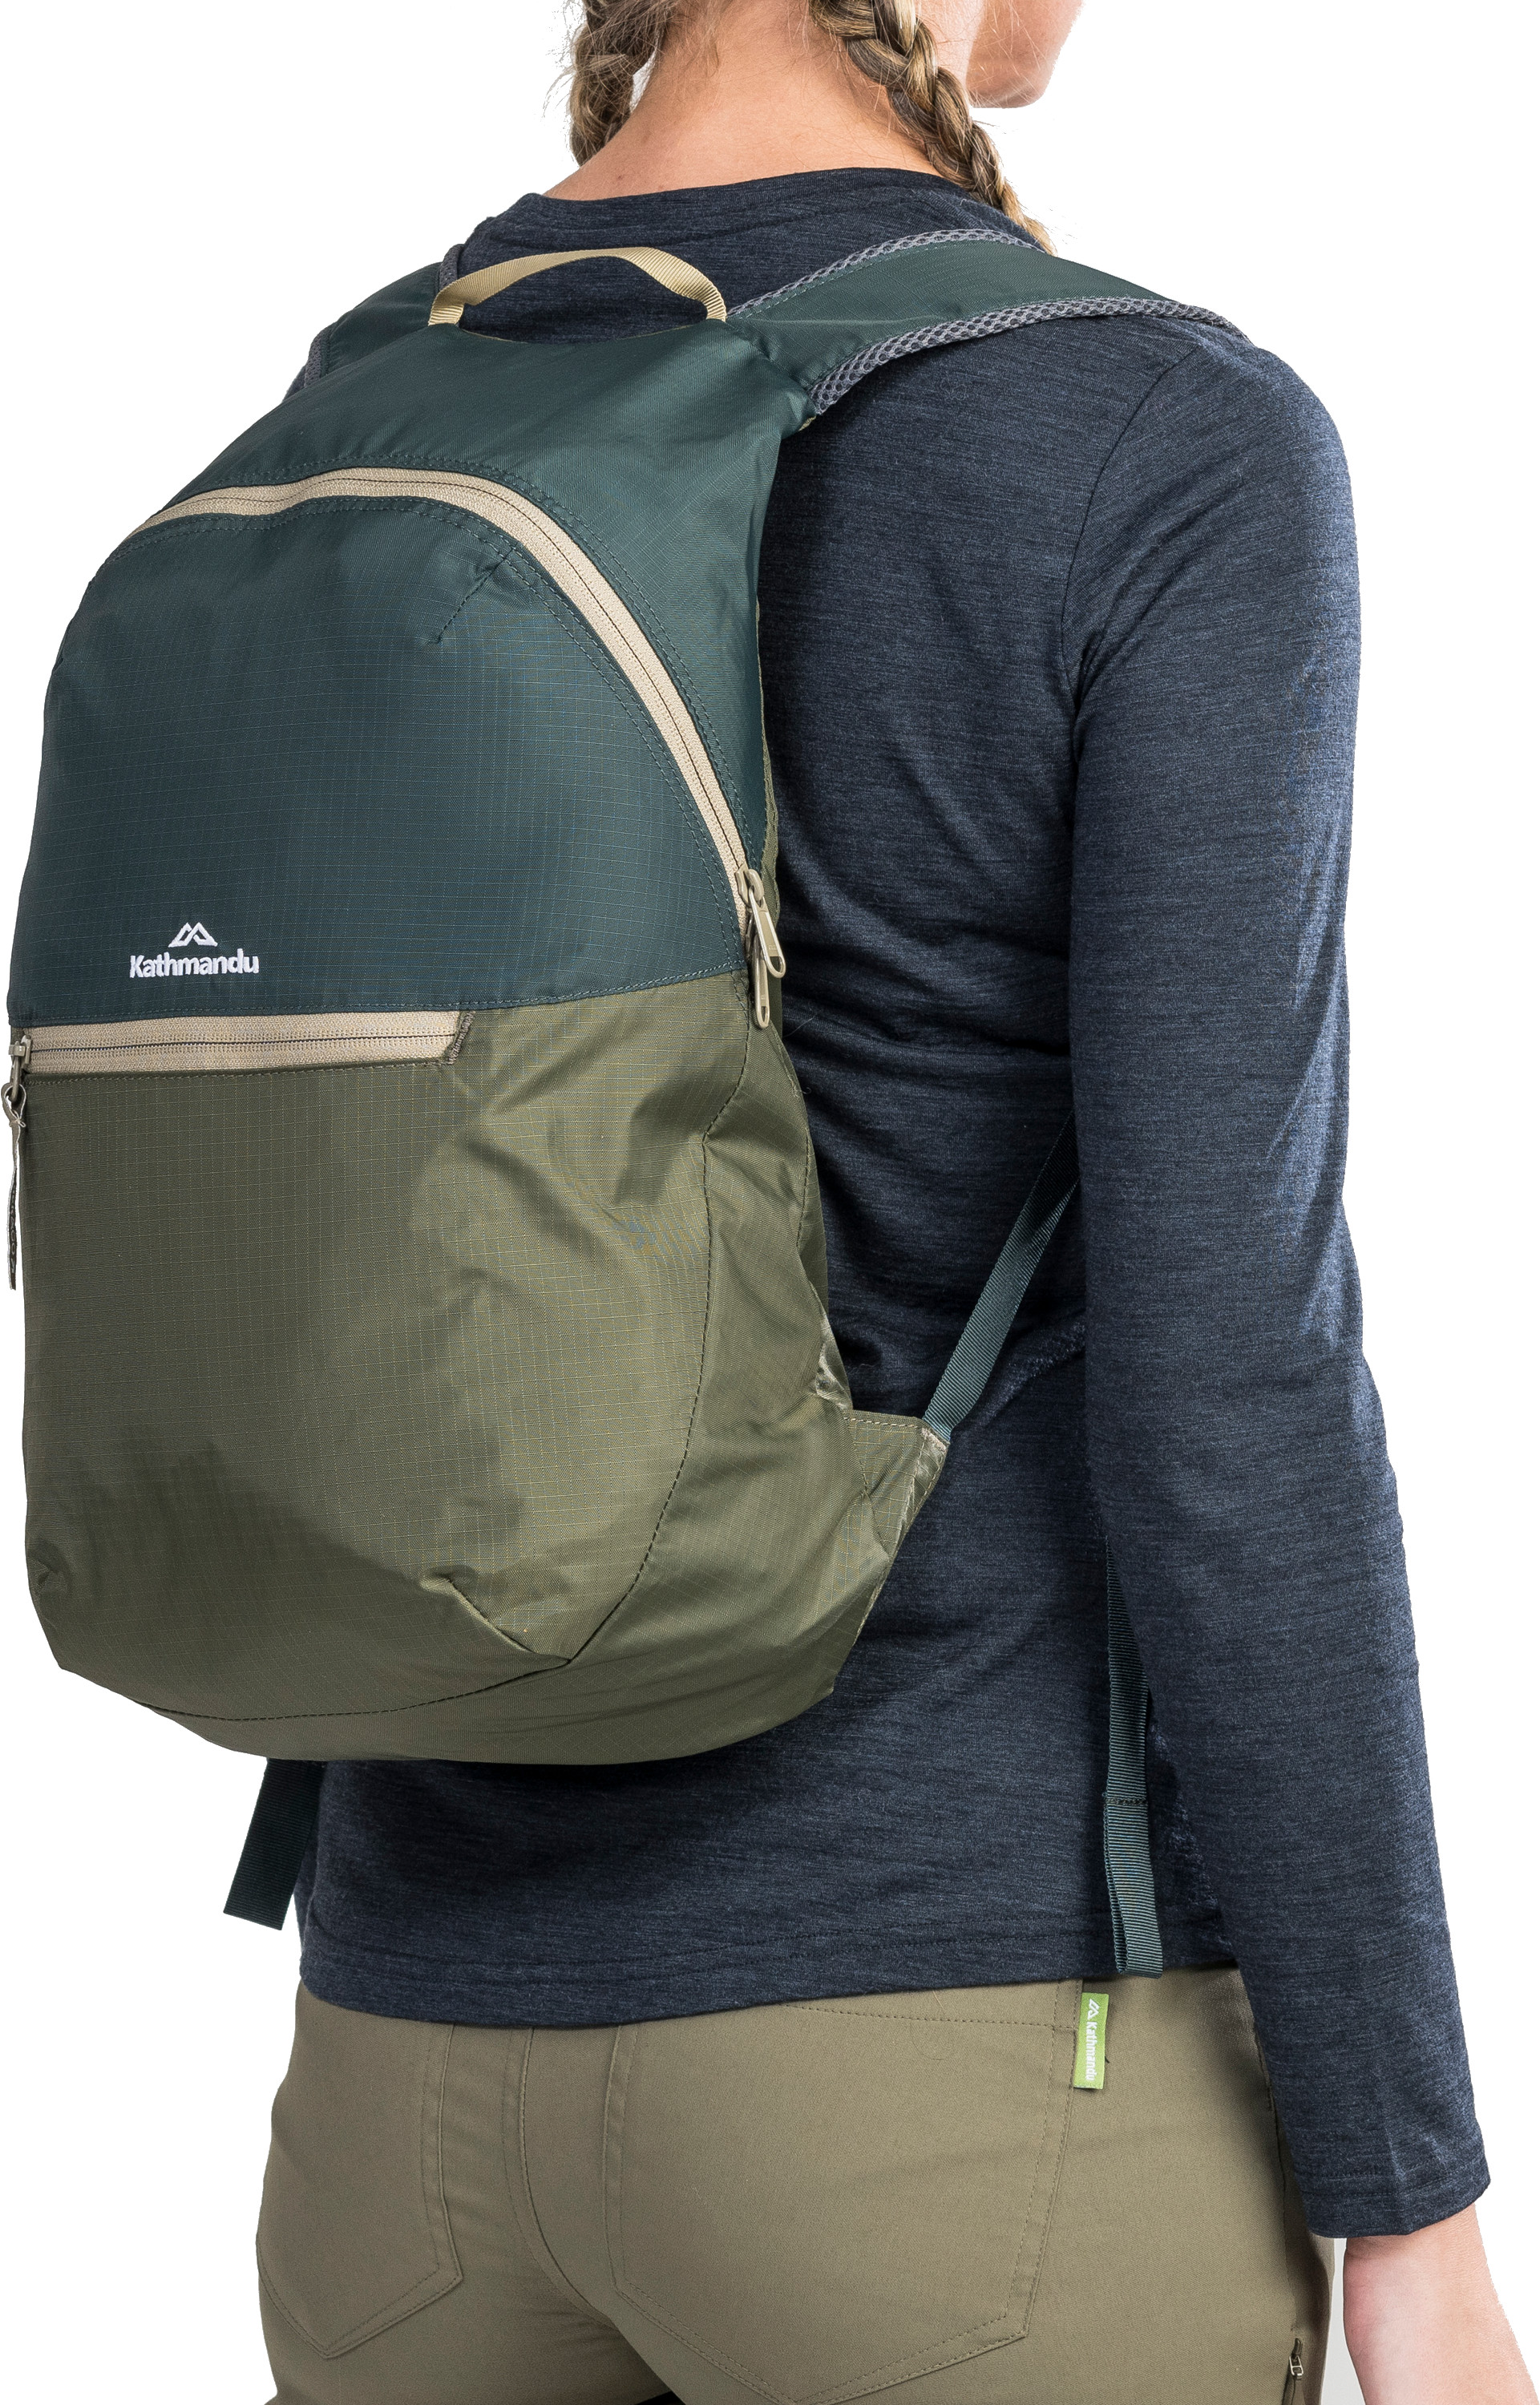 Kathmandu Pocket Pack V4 Packable Daypack Backpack